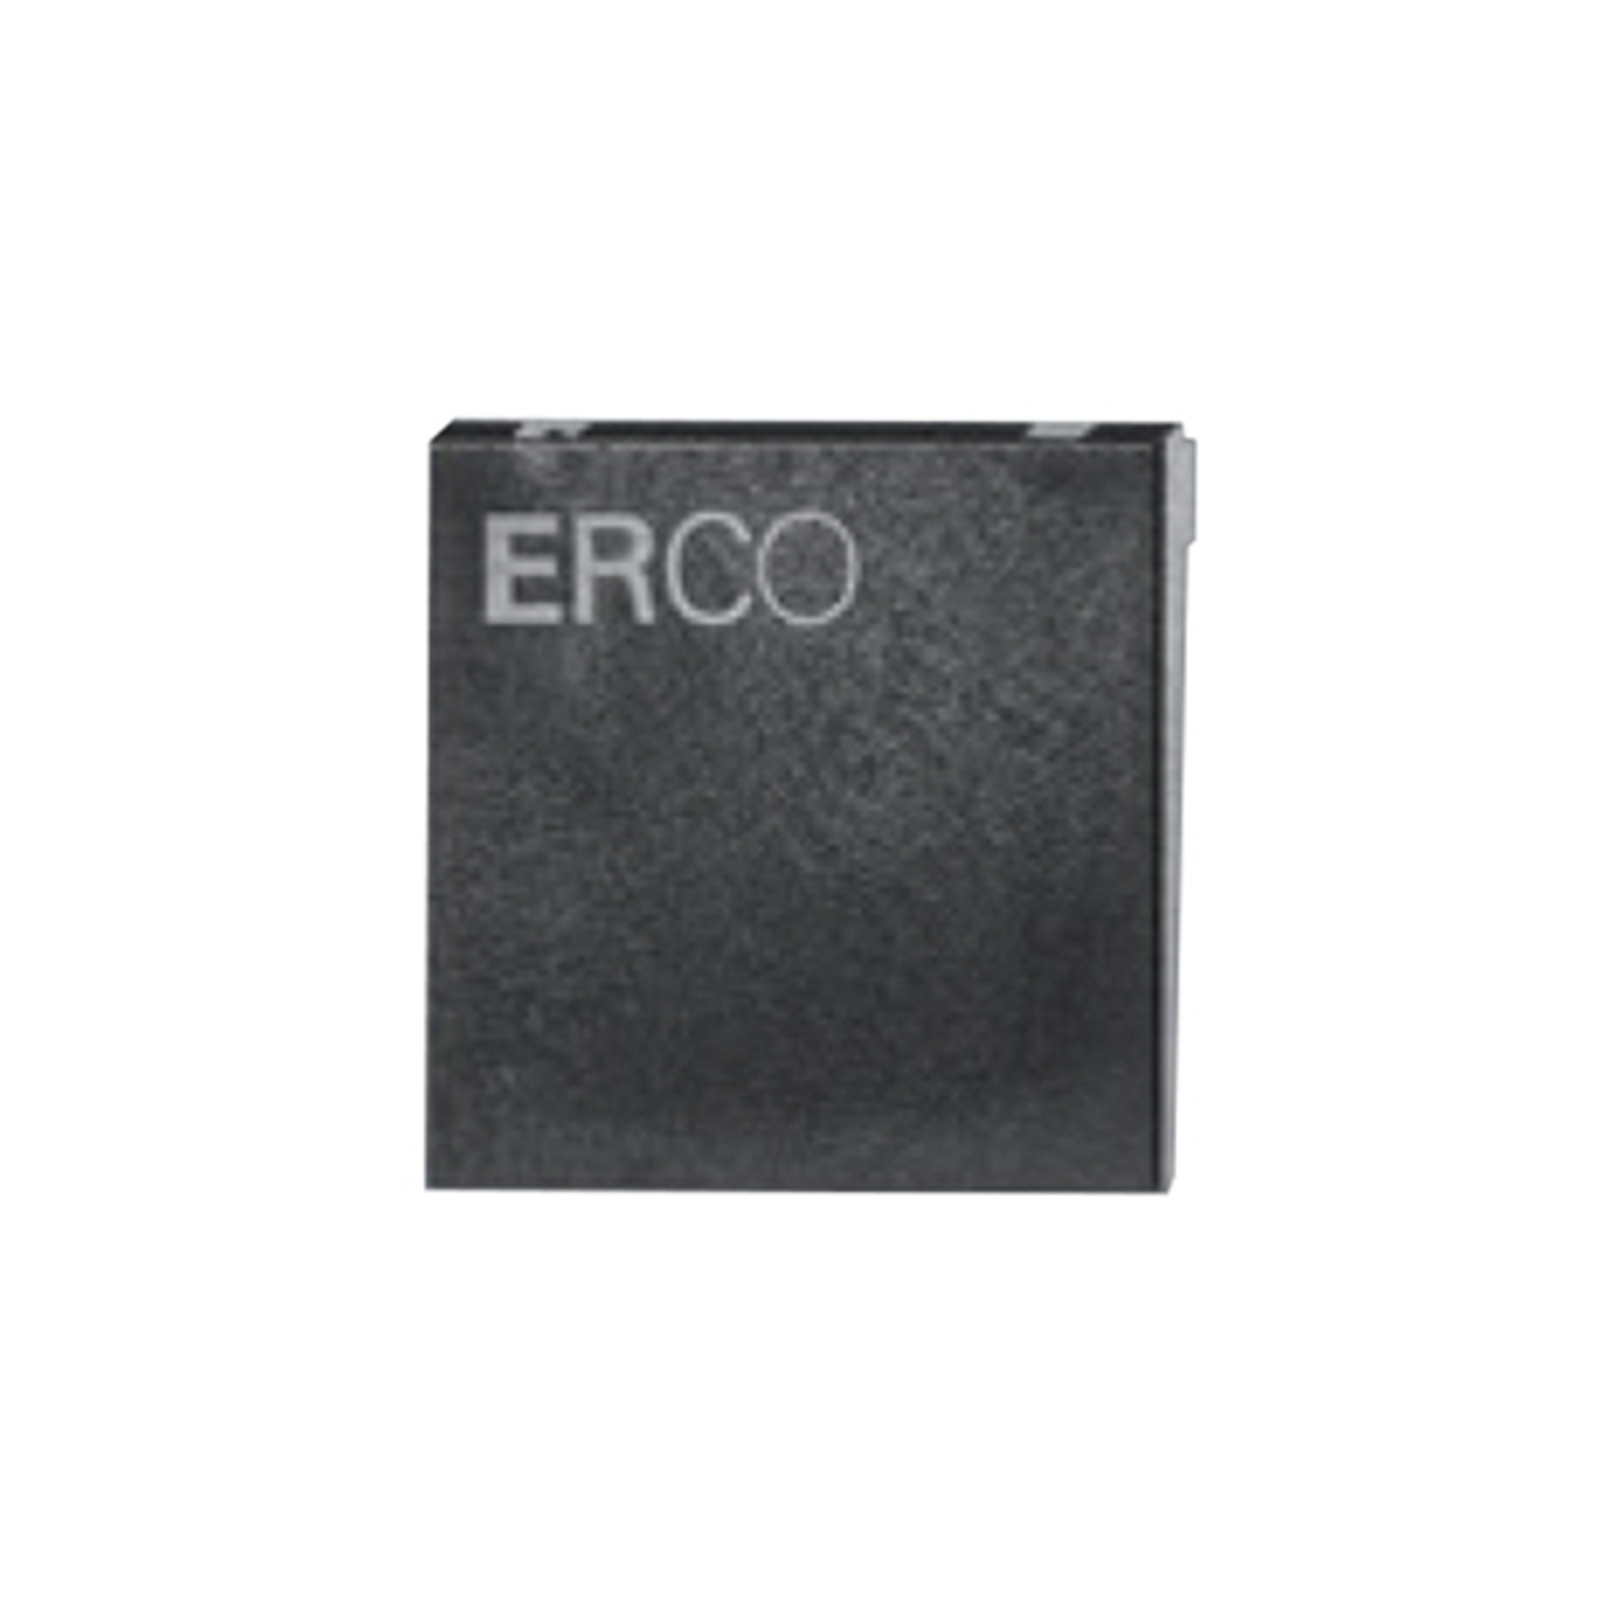 ERCO galinė plokštelė 3 fazių bėgių keliui, juoda